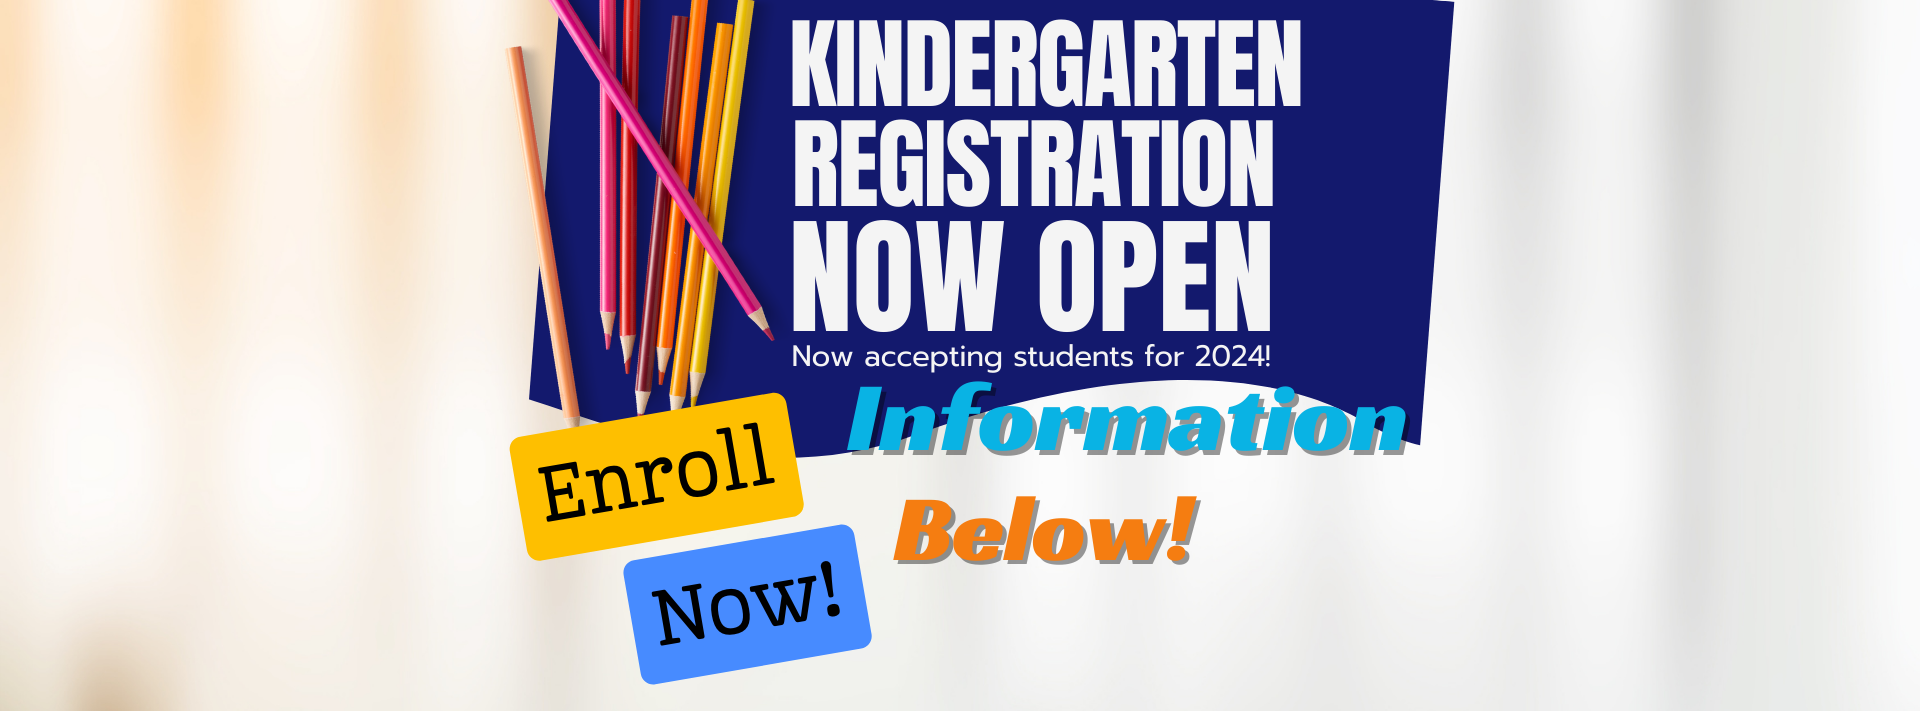 Kindergarten registration is open.